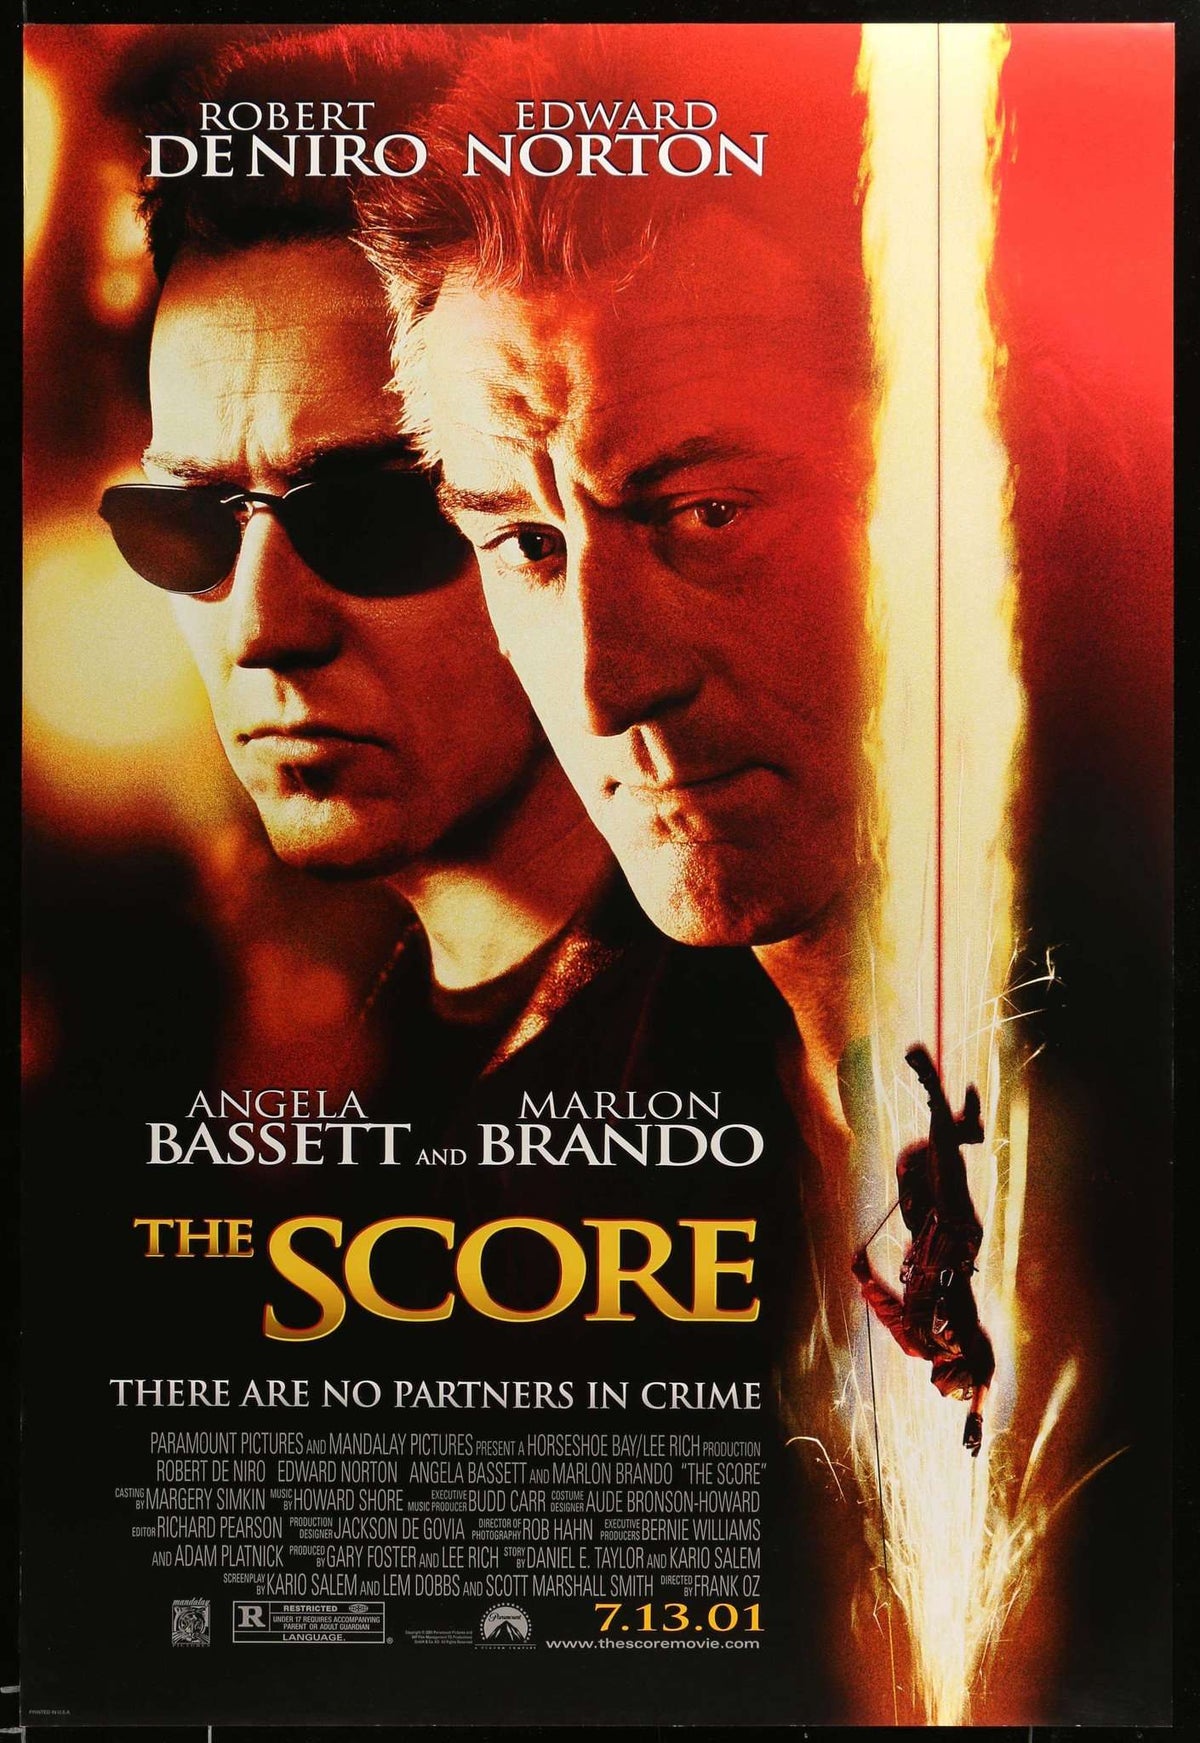 Score (2001) original movie poster for sale at Original Film Art